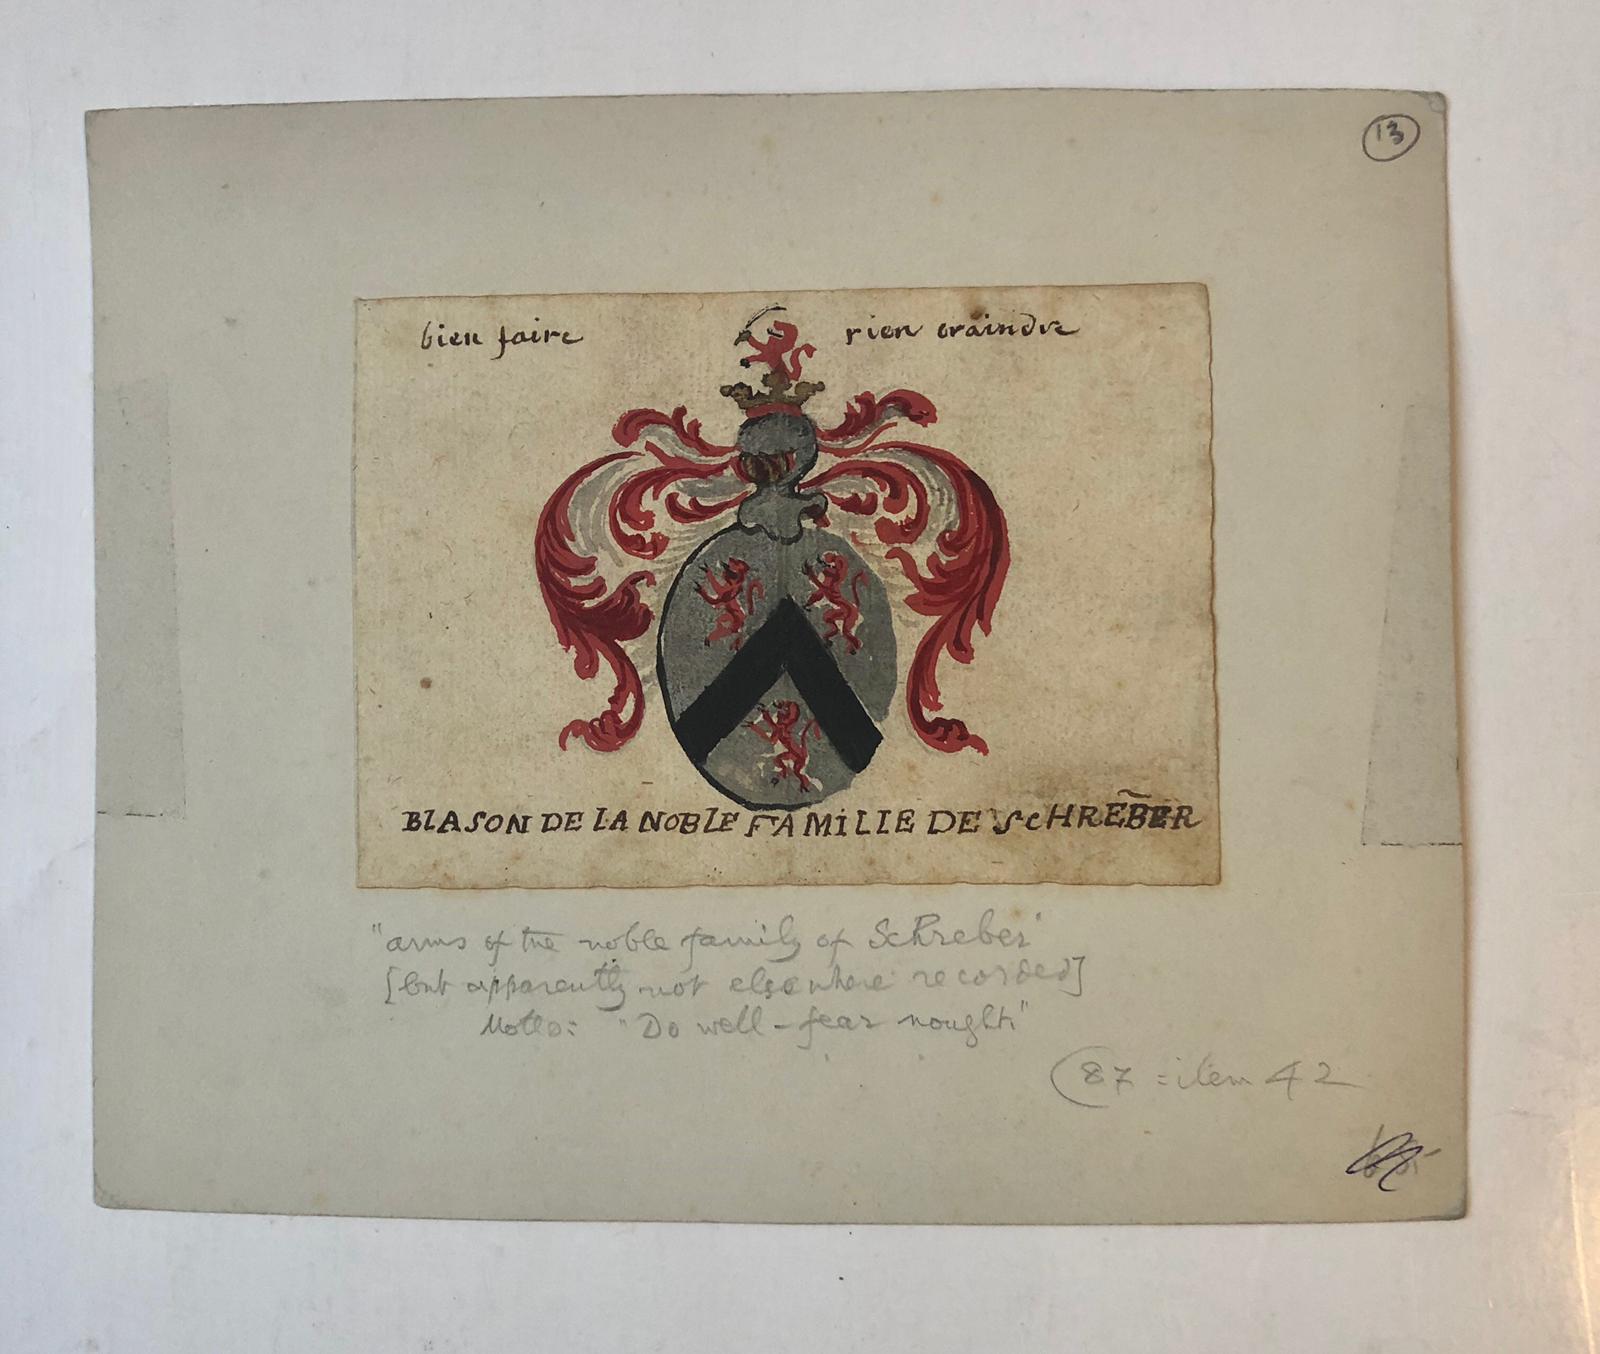  - SCHREBER `Blason de la noble famille de Schreber'; tekening in kleur. 18de-eeuws (?). Motto: `Bien faire, rien craindre', 10x14 cm.